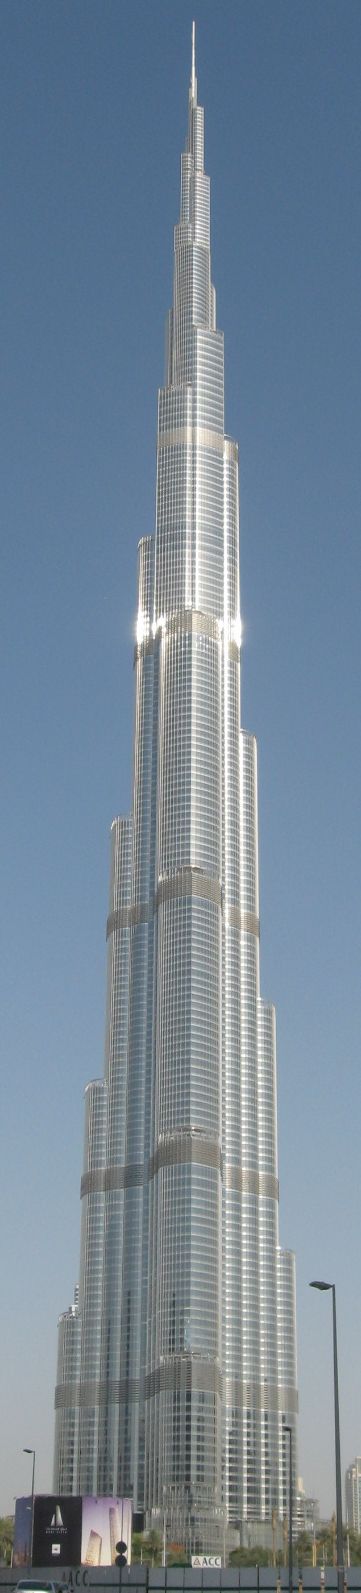 Burj Kalifa Dubai